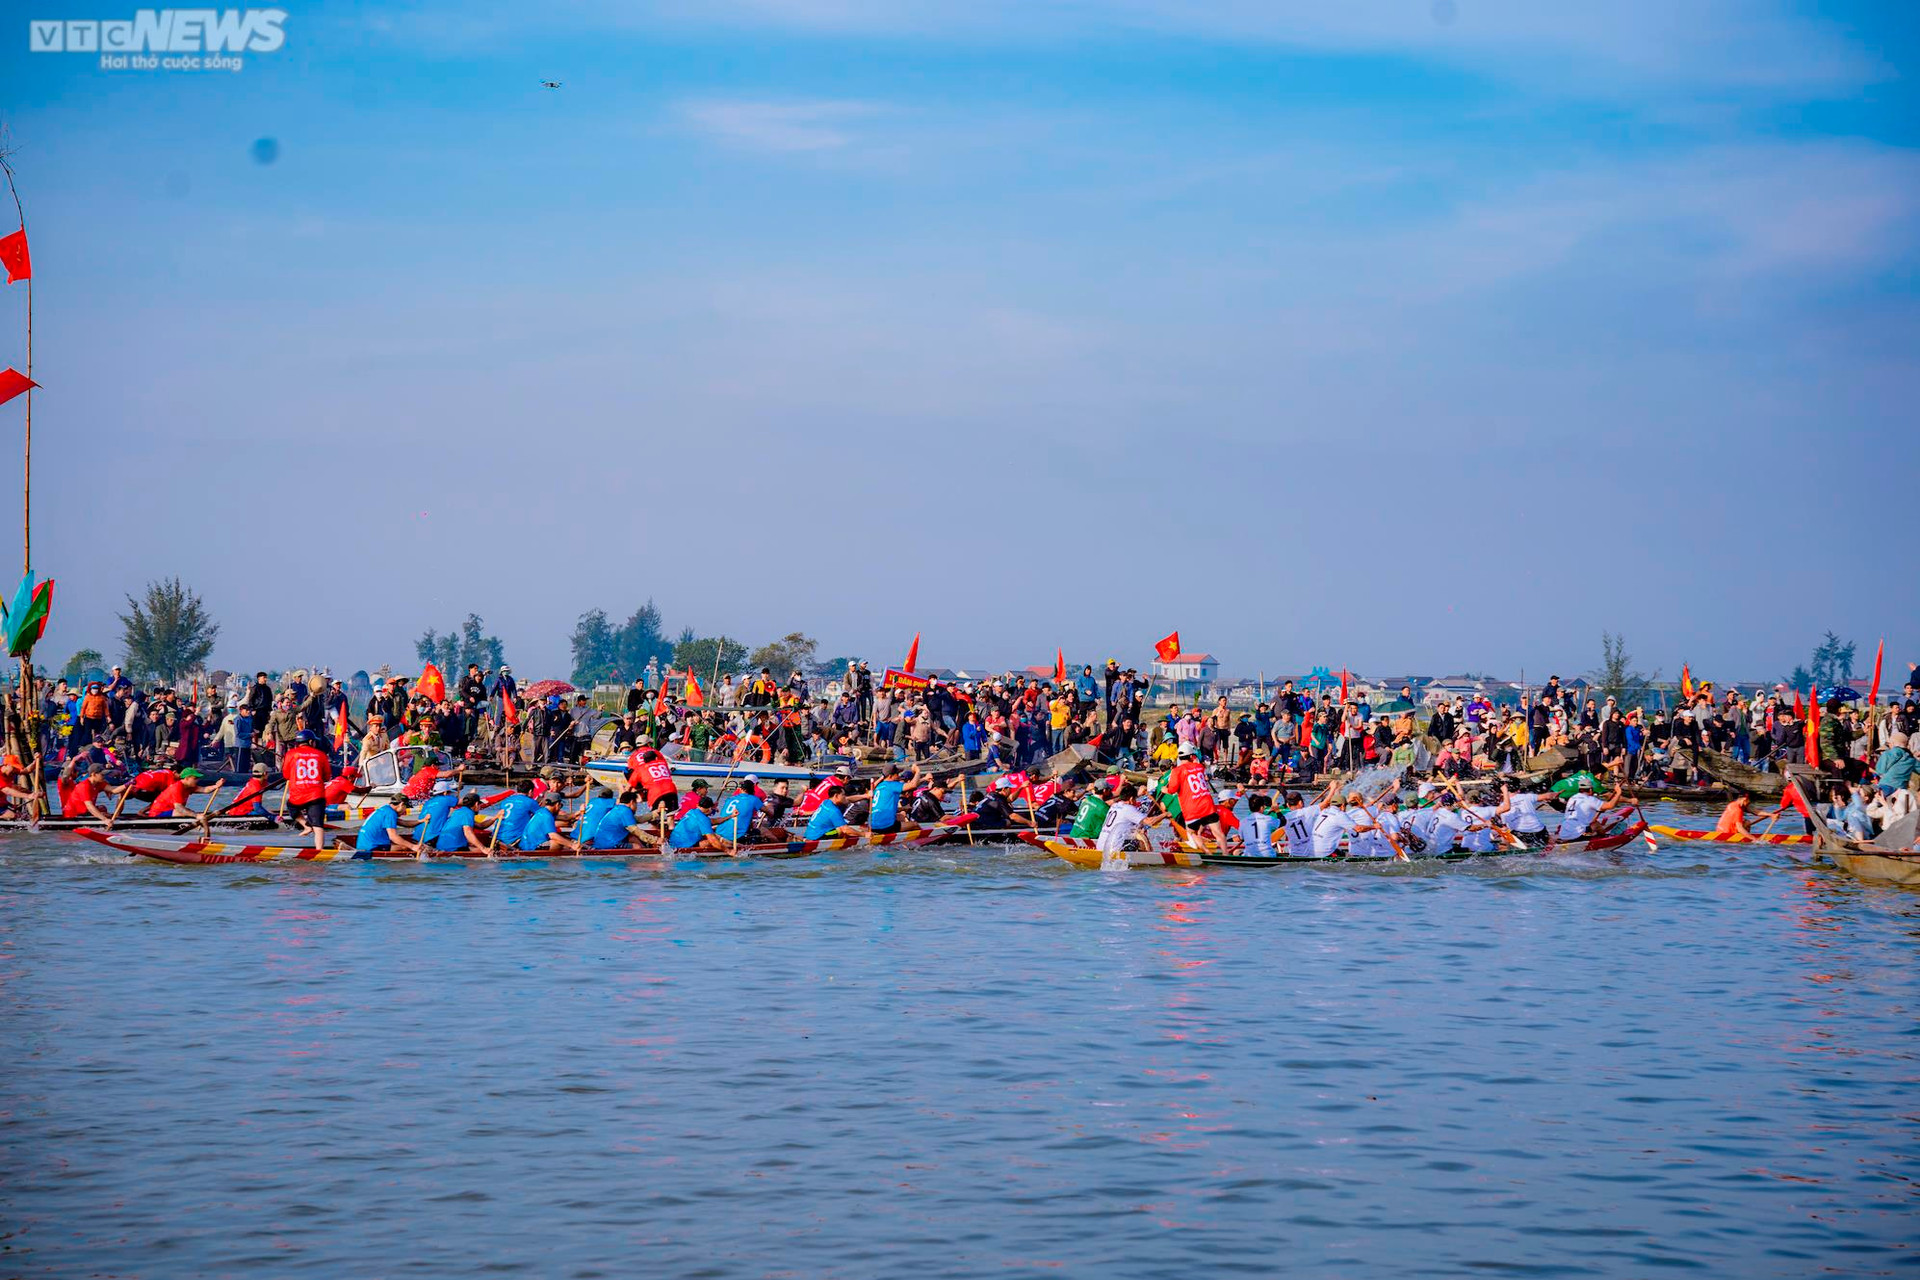 Trai tráng tranh tài đua thuyền ở lễ hội Cầu ngư lâu đời nhất cố đô Huế - 13